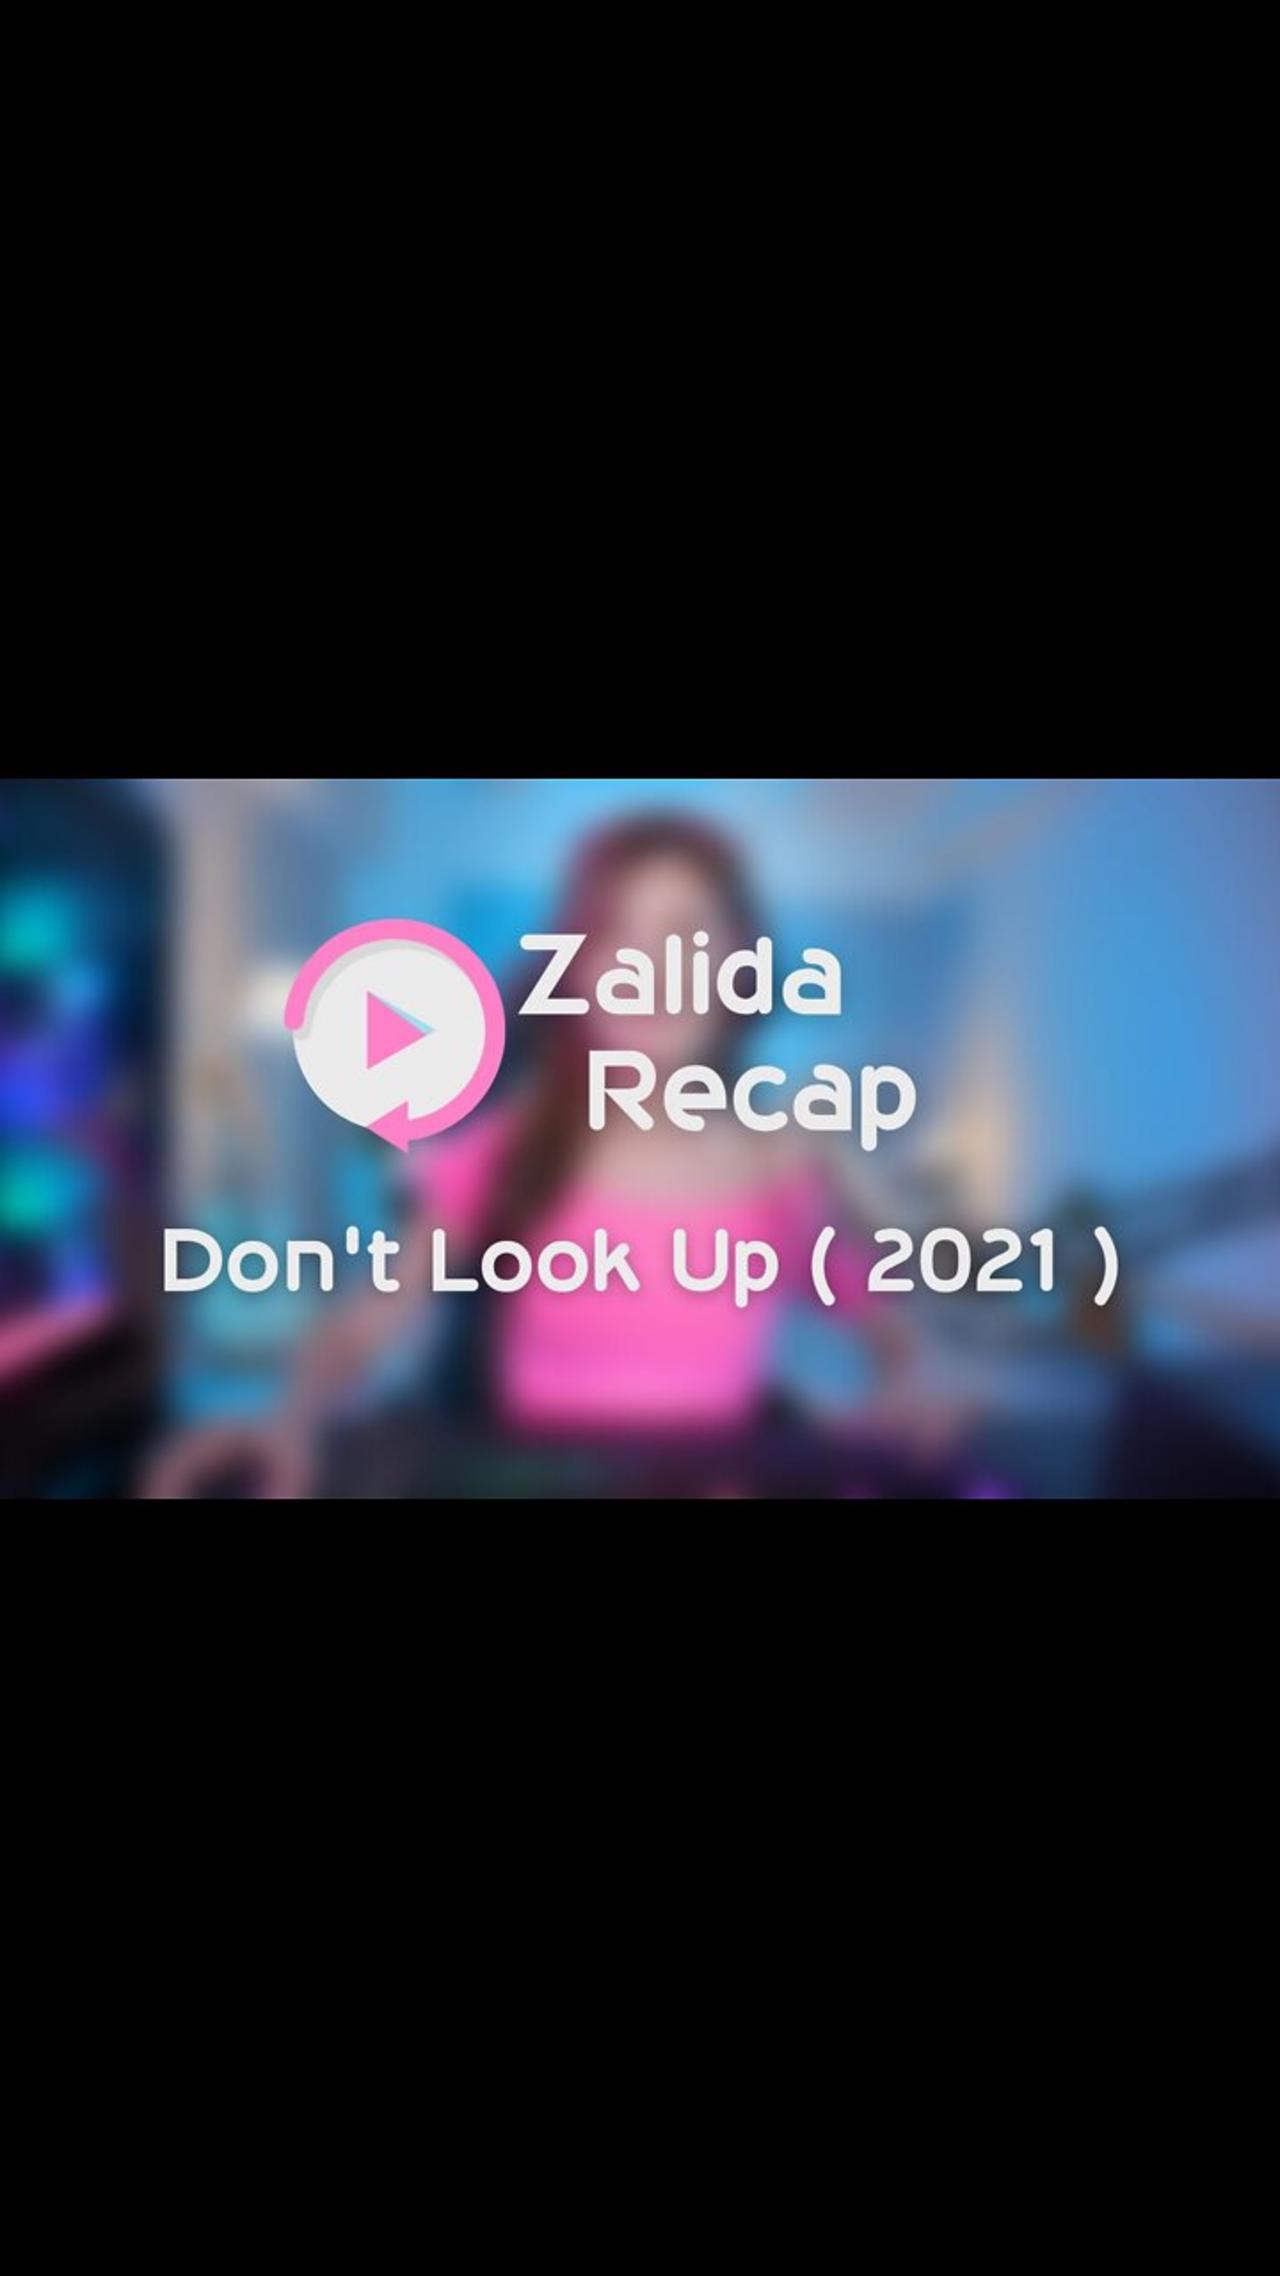 Don't Look Up ( 2021 ) - Movie Recap Summary